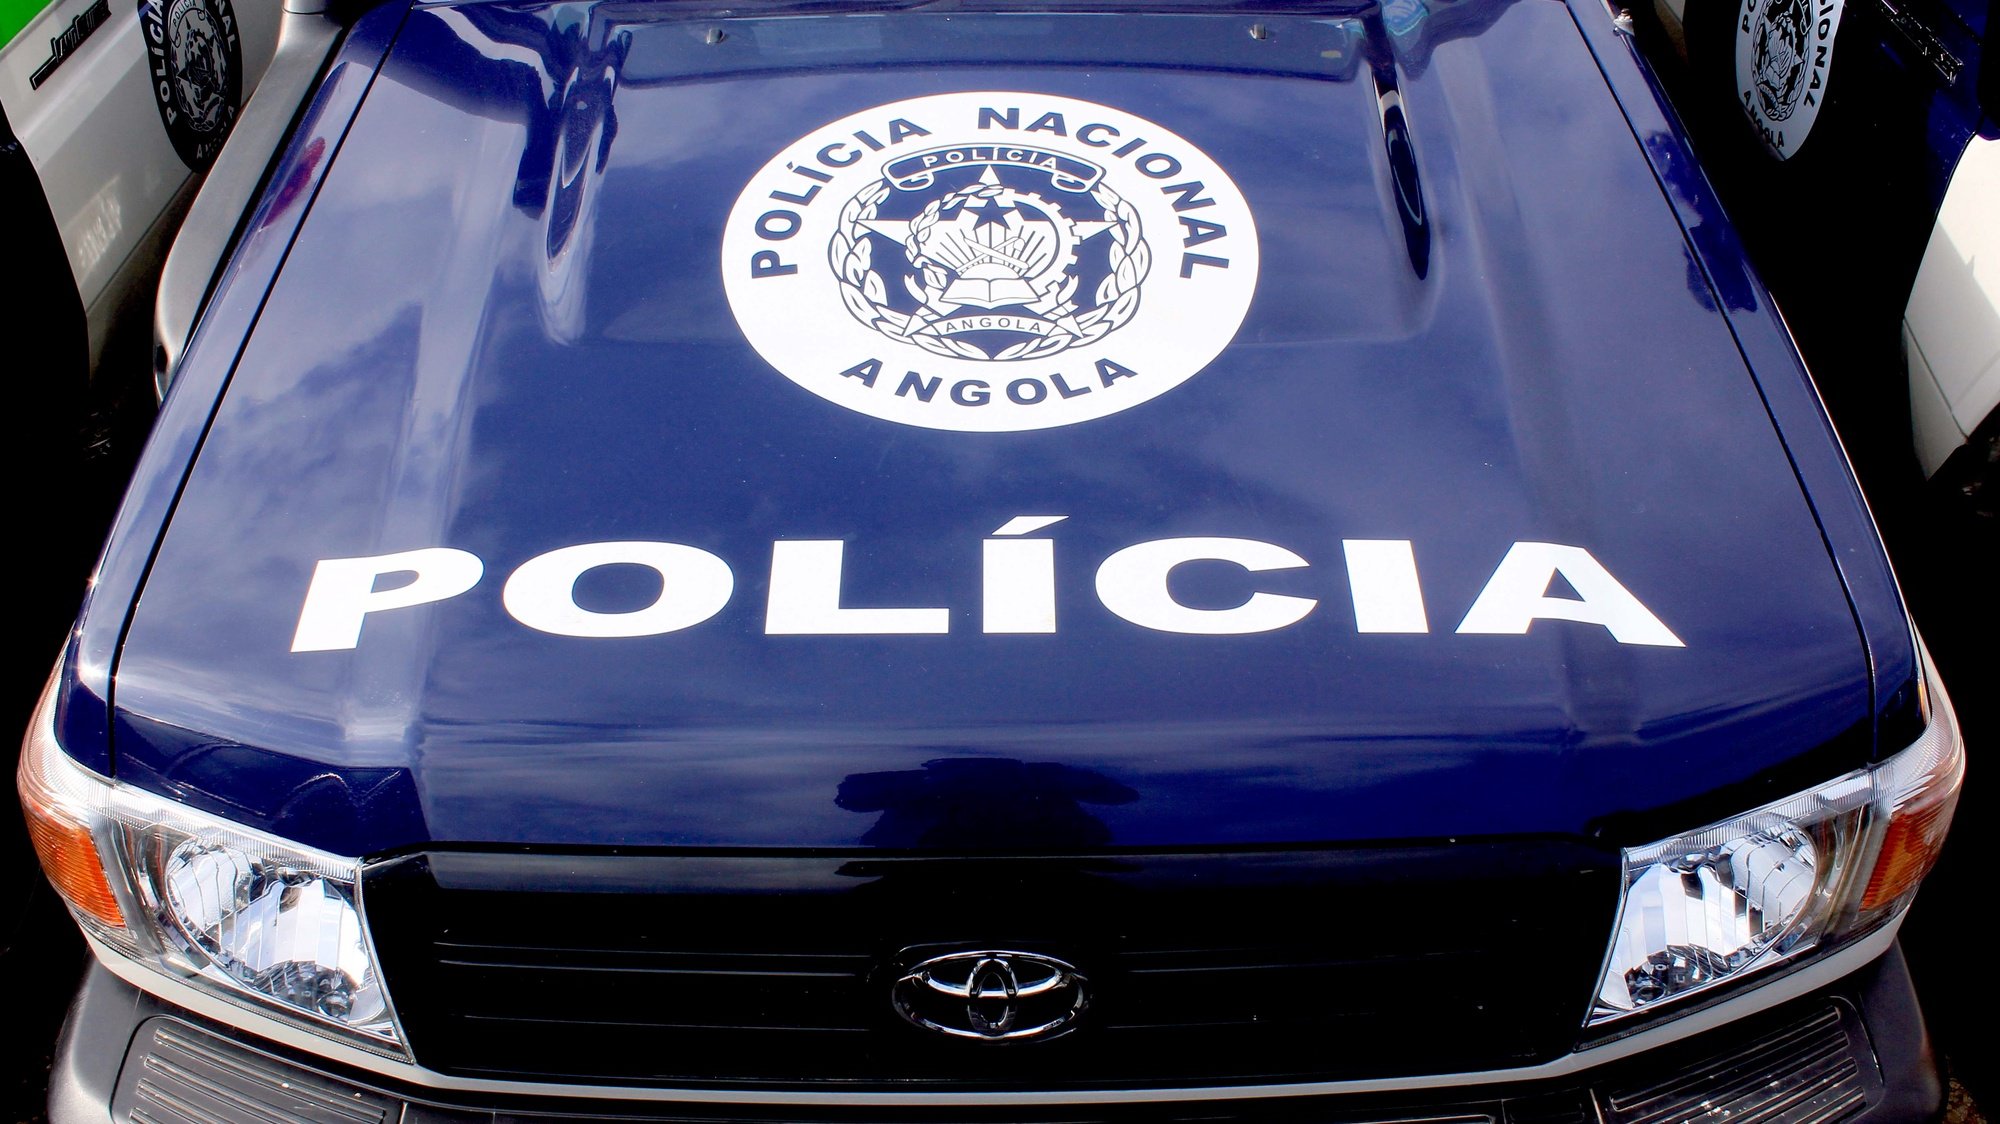 Entrega de viaturas à polícia em cerimónia presidida pelo ministro do Interior angolano, Ângelo de Barros Veiga Tavares (ausente da foto), no âmbito da prevenção e combate à criminalidade, Luanda, Angola, 4 de dezembro de 2018.  AMPE ROGÉRIO/LUSA